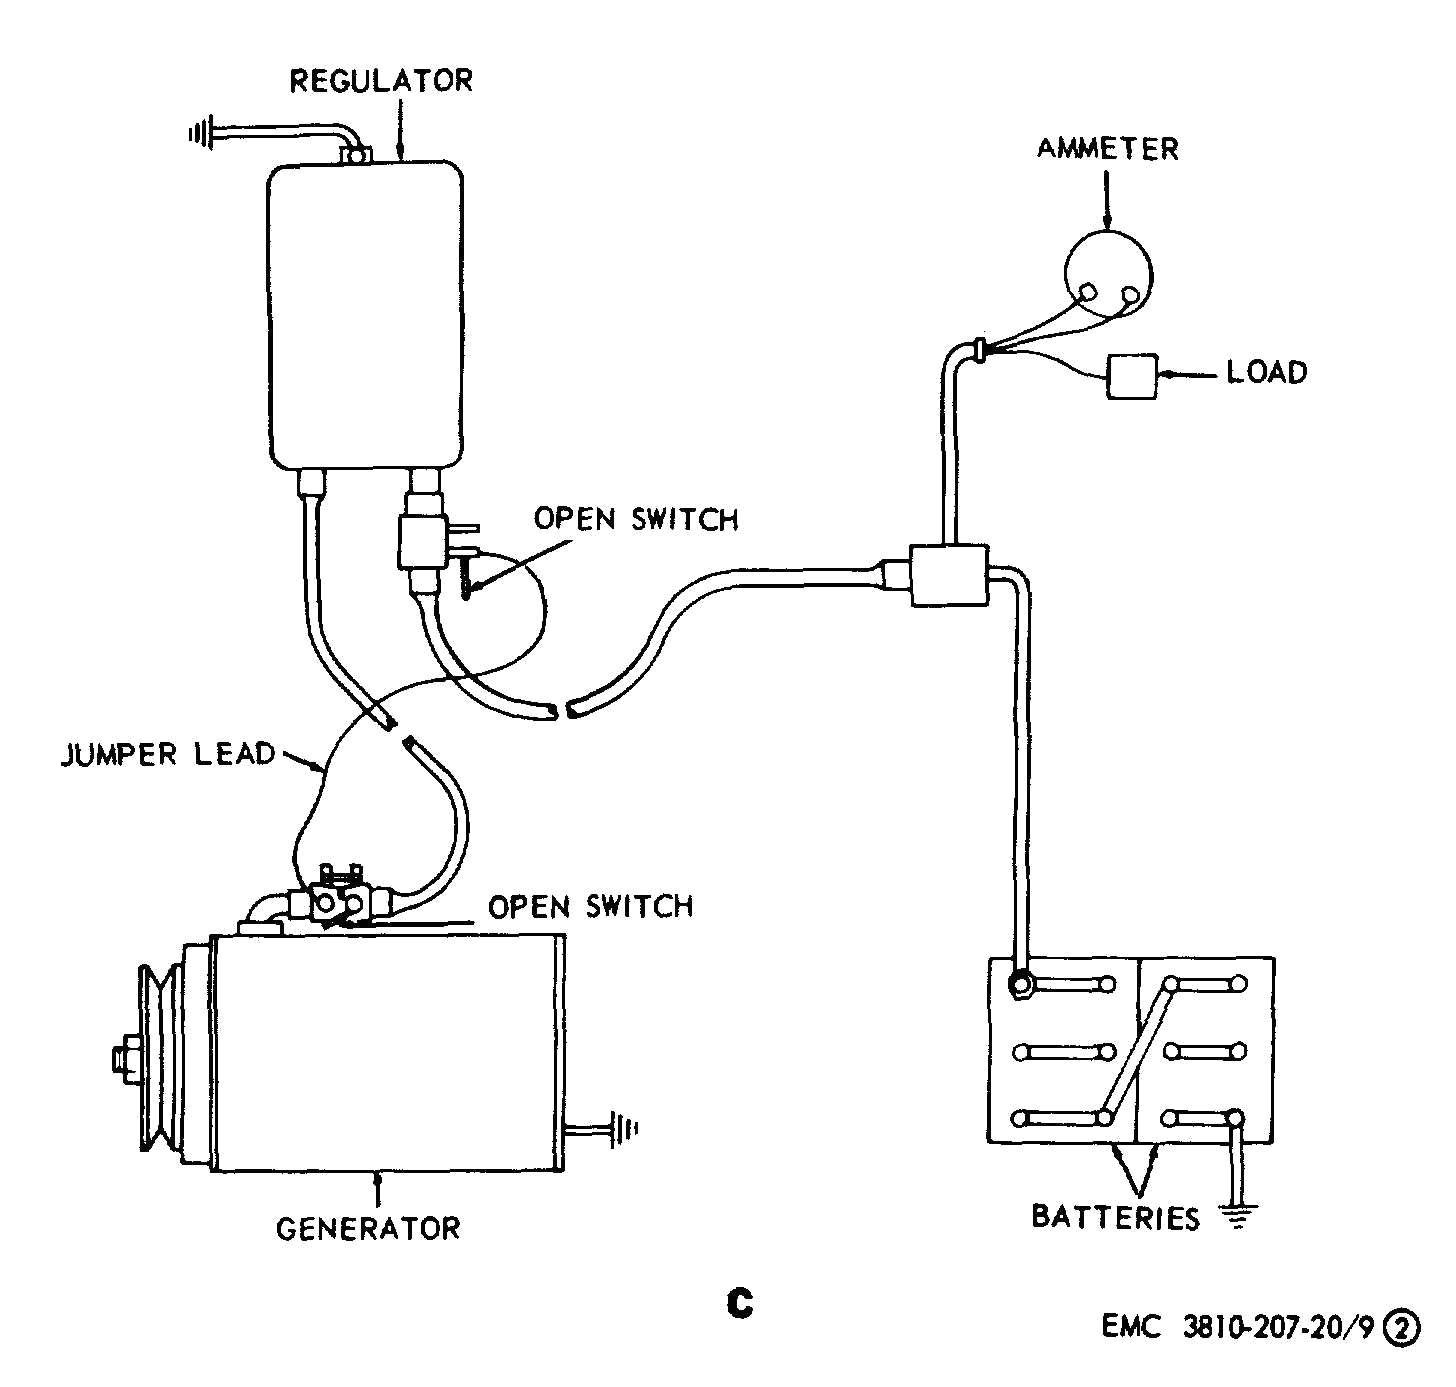 vw 12 volt regulator wiring diagram wiring diagram name amp gauge wiring diagram it47 bt j1